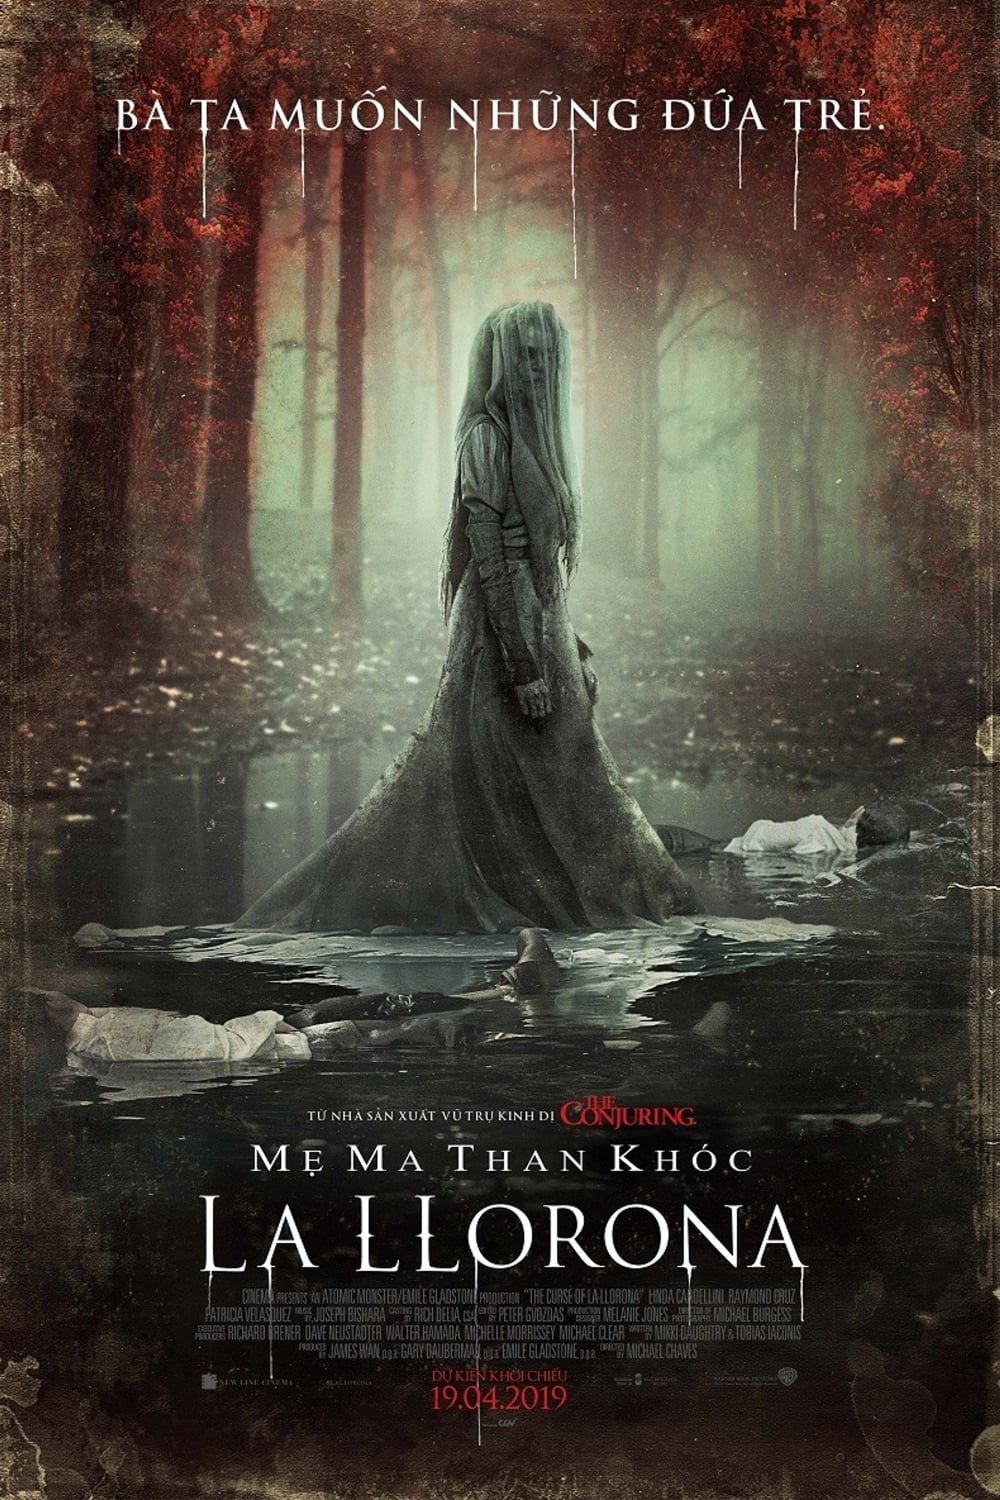 Mẹ Ma Than Khóc La Llorona (The Curse of La Llorona) [2019]